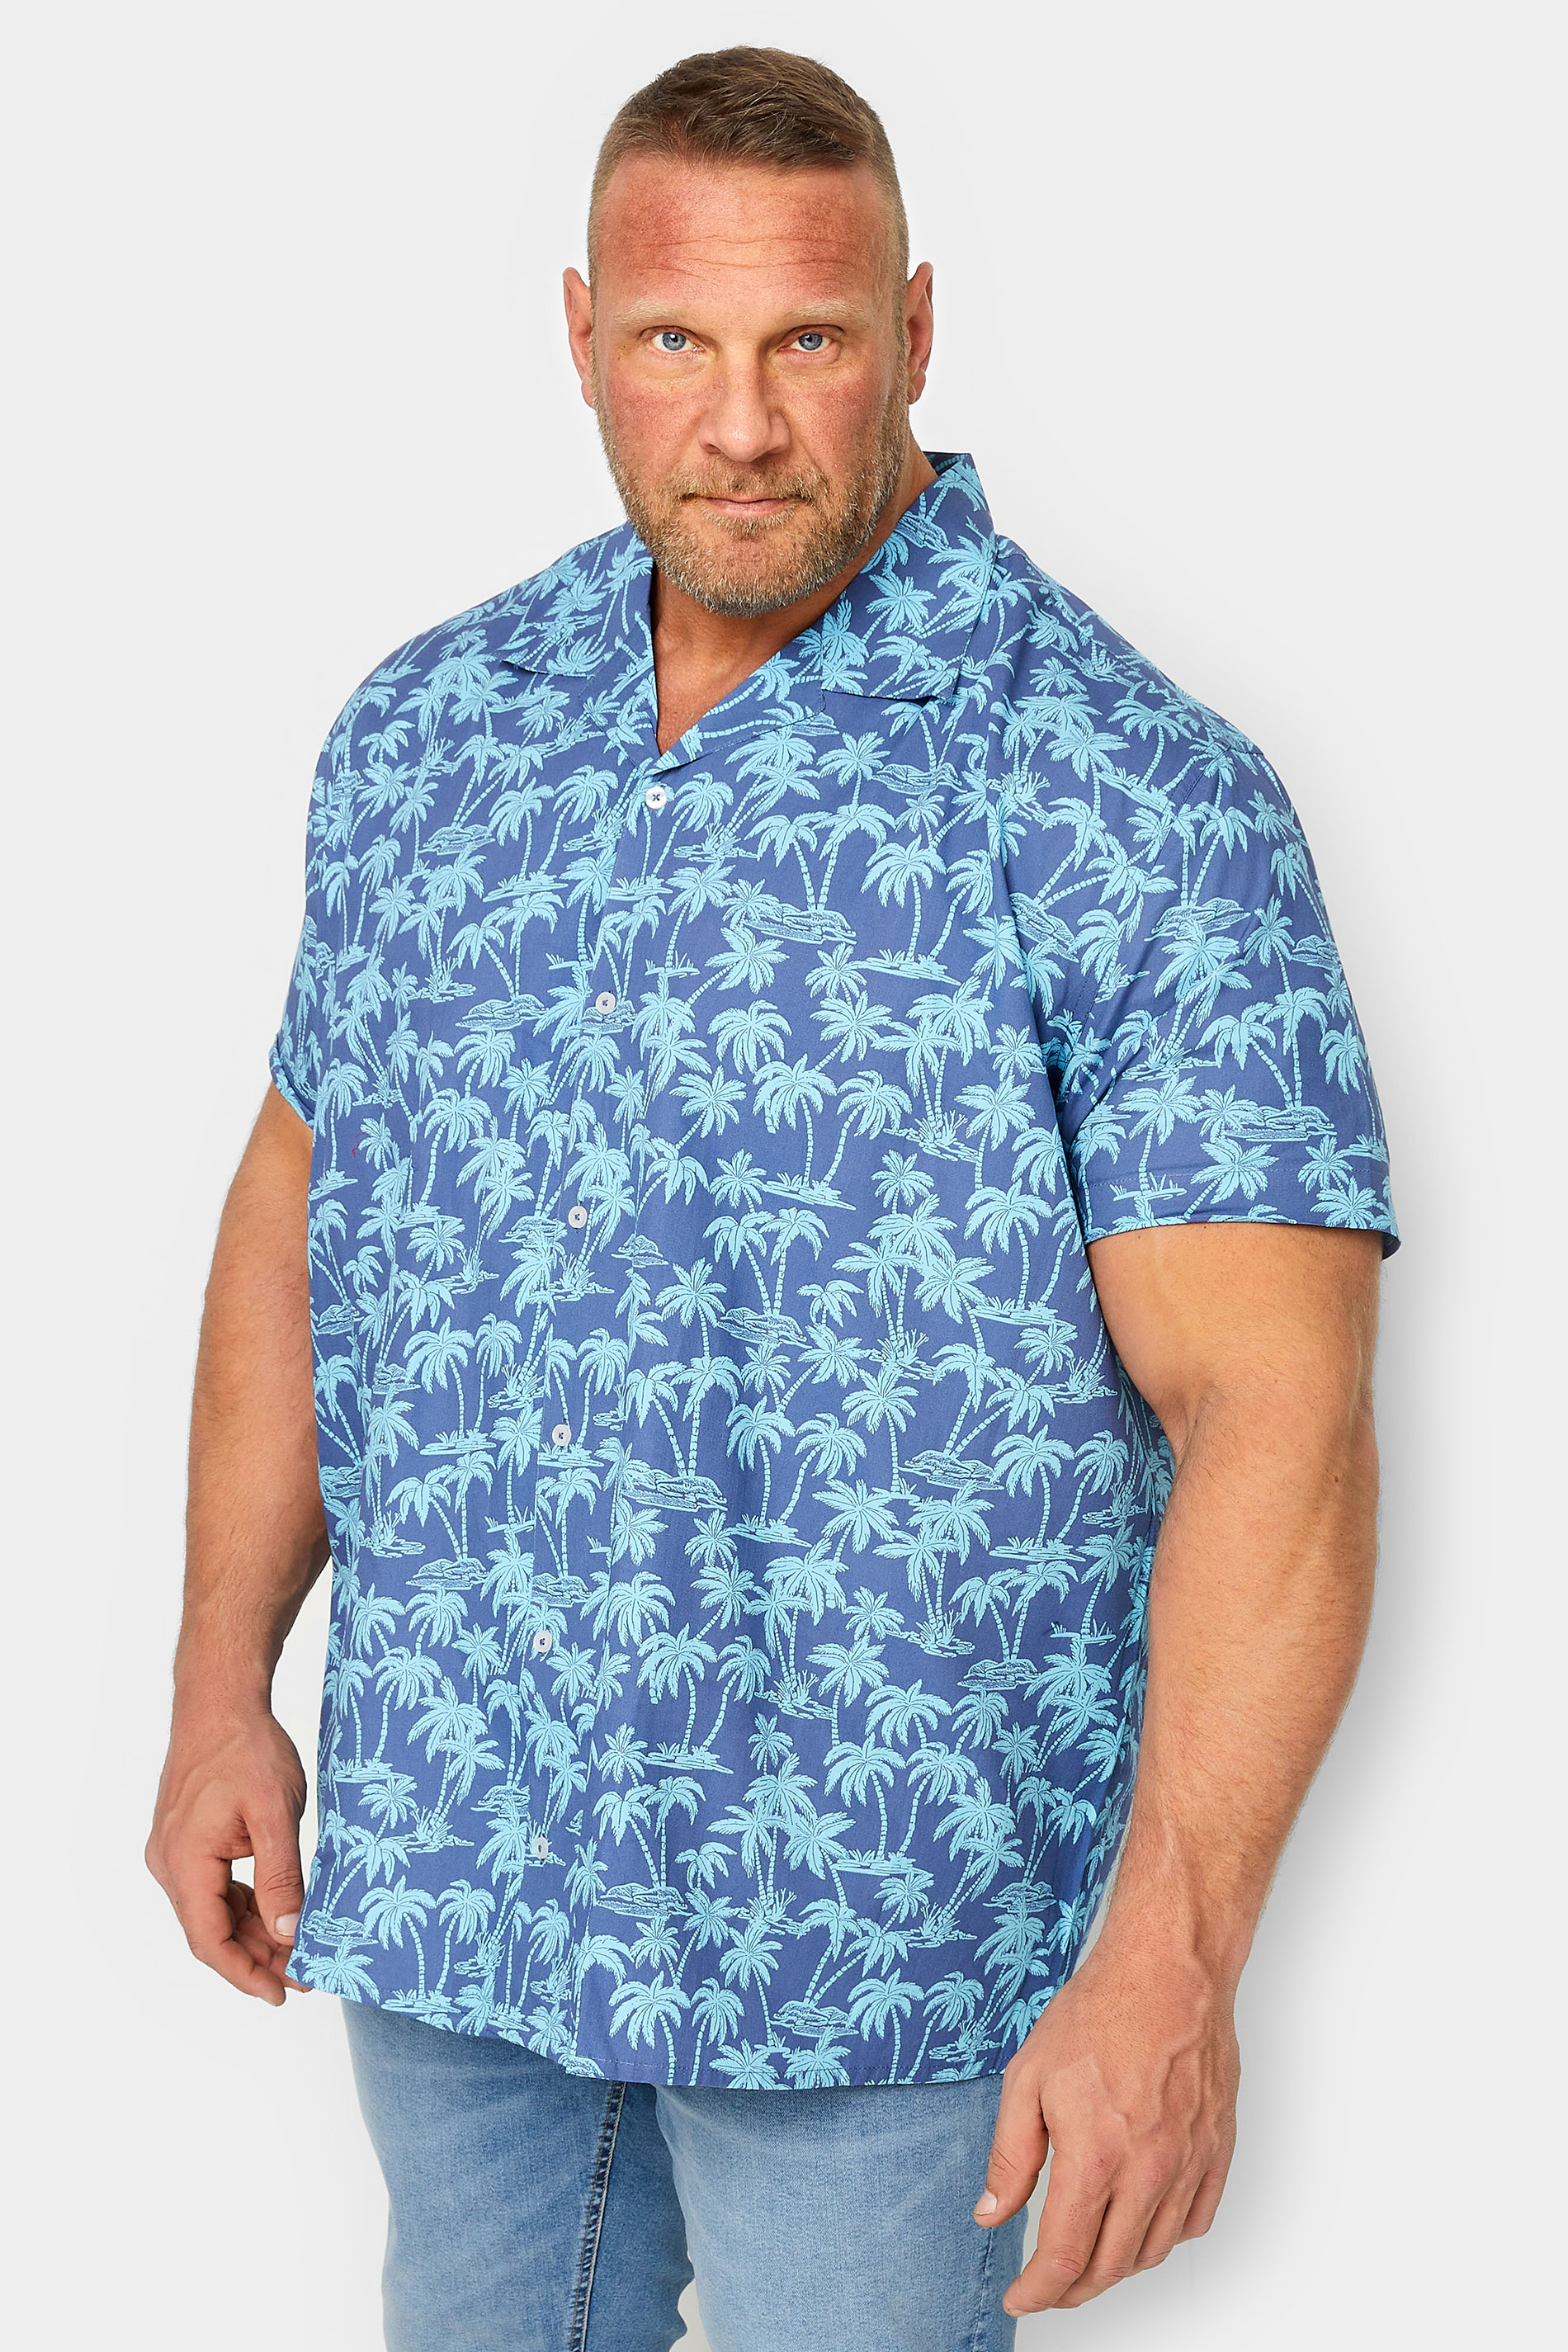 BadRhino Big & Tall Blue Palm Print Shirt | BadRhino 1